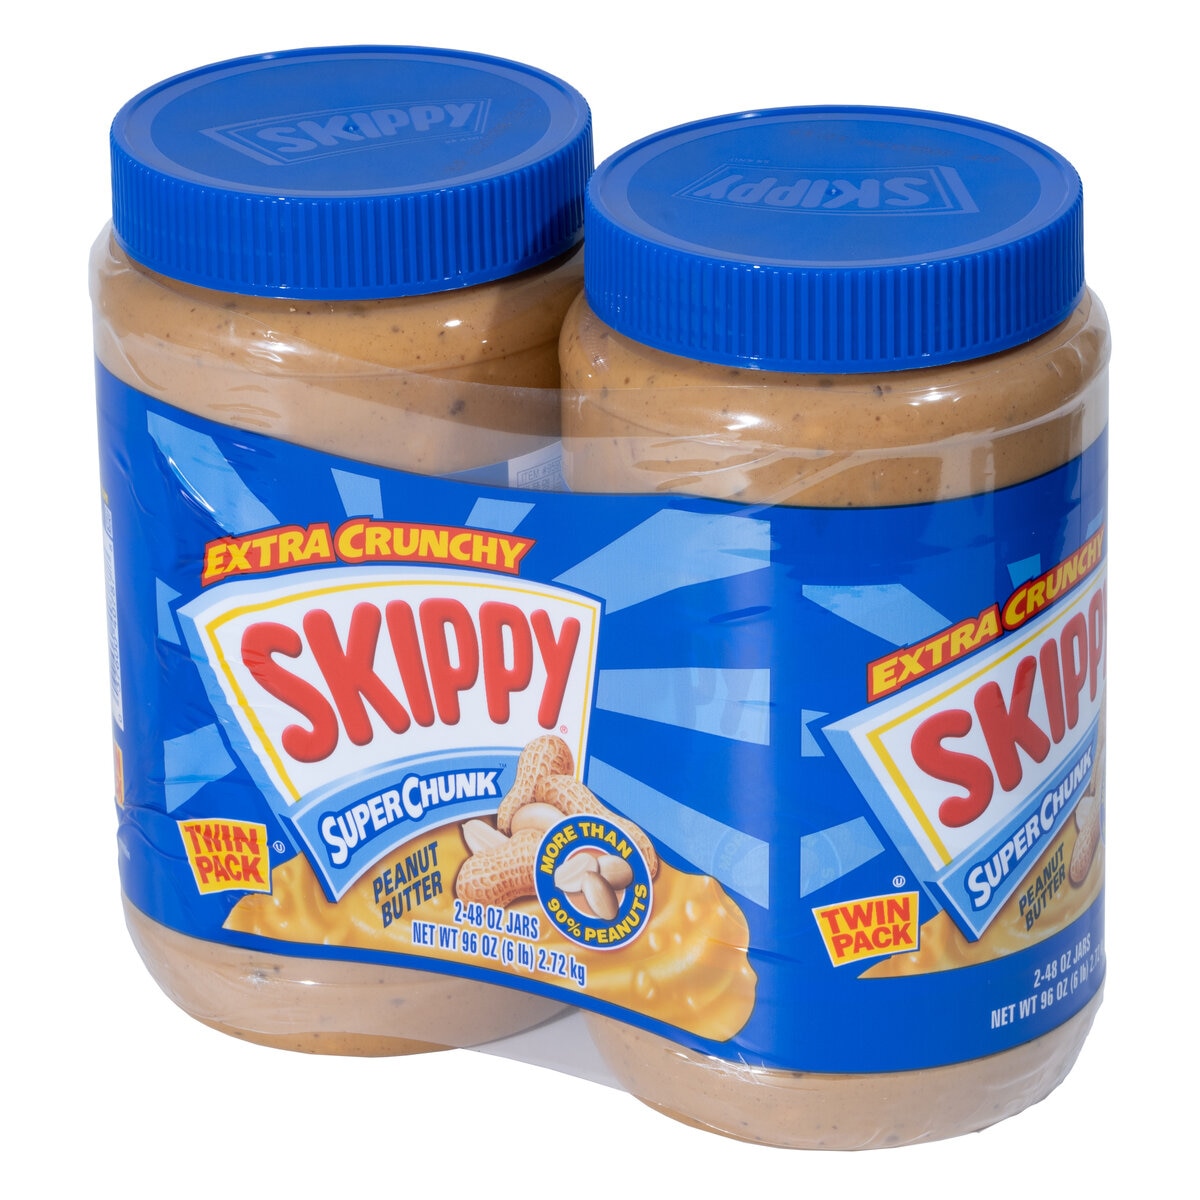 スキッピー ピーナッツバターチャンク 1.36kg x 2個 SKIPPY Peanut Butter Chunk スプレッド トースト ディップ 大容量